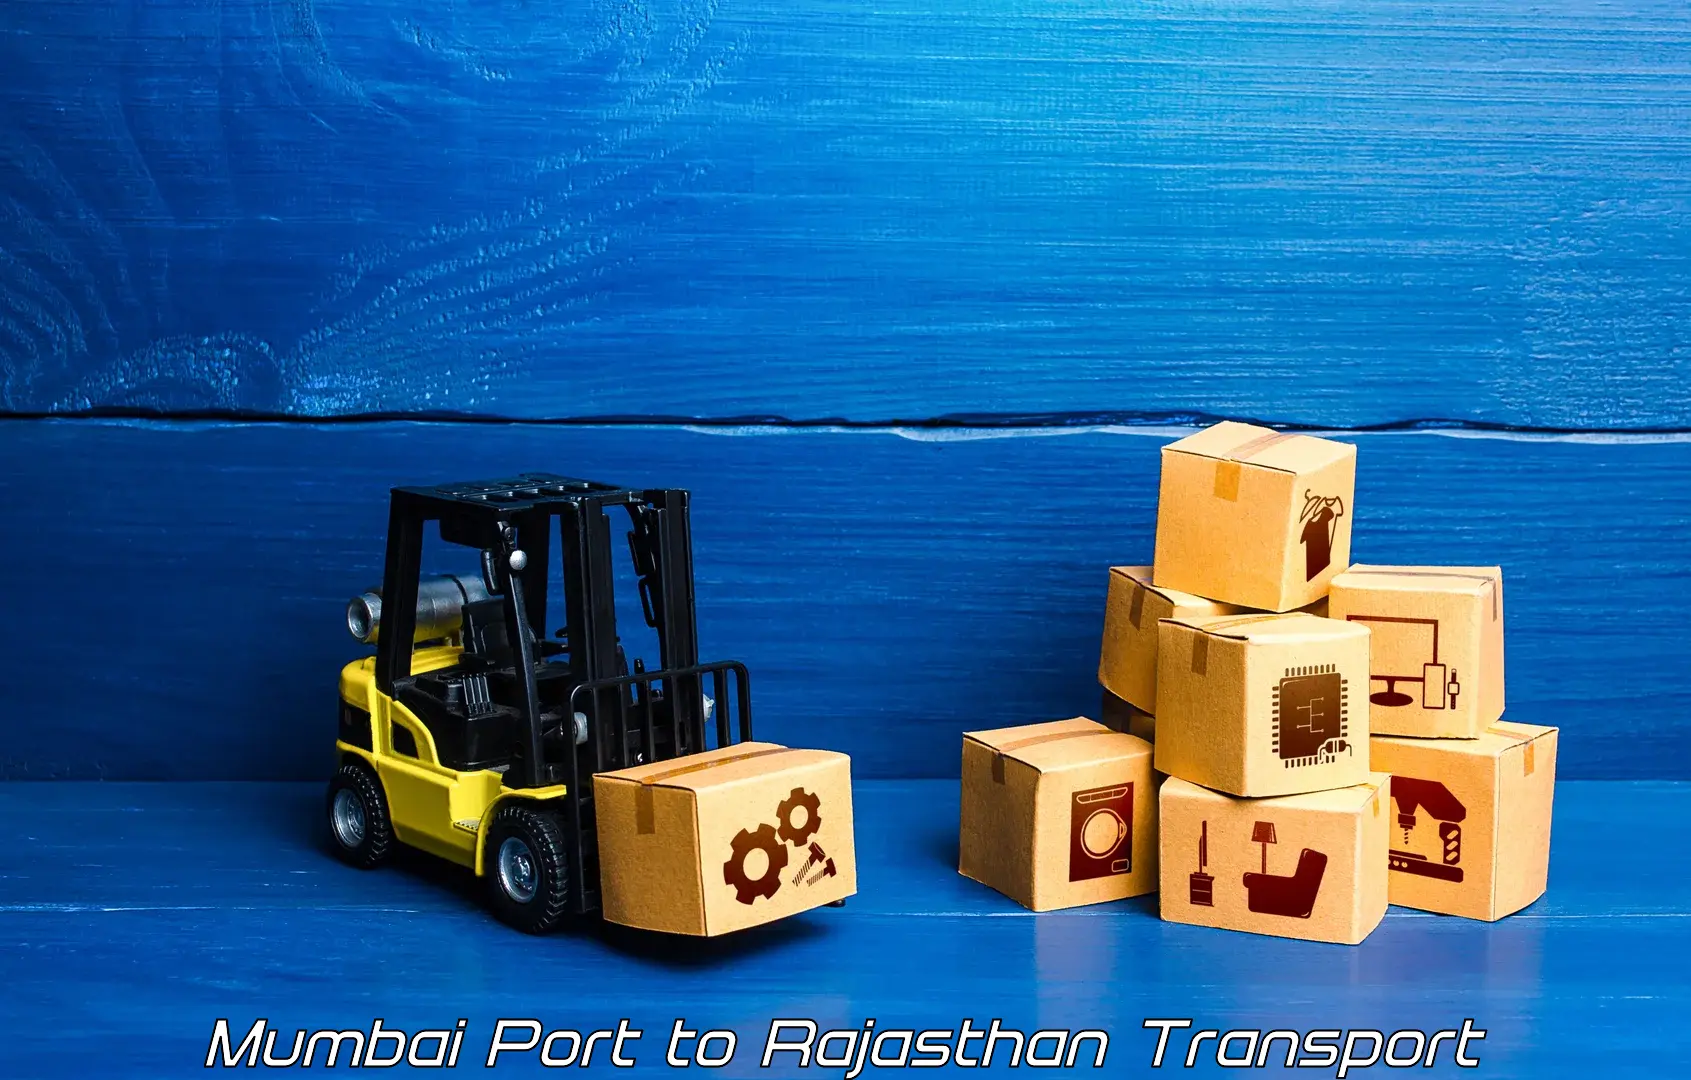 Pick up transport service Mumbai Port to Pratapgarh Rajasthan